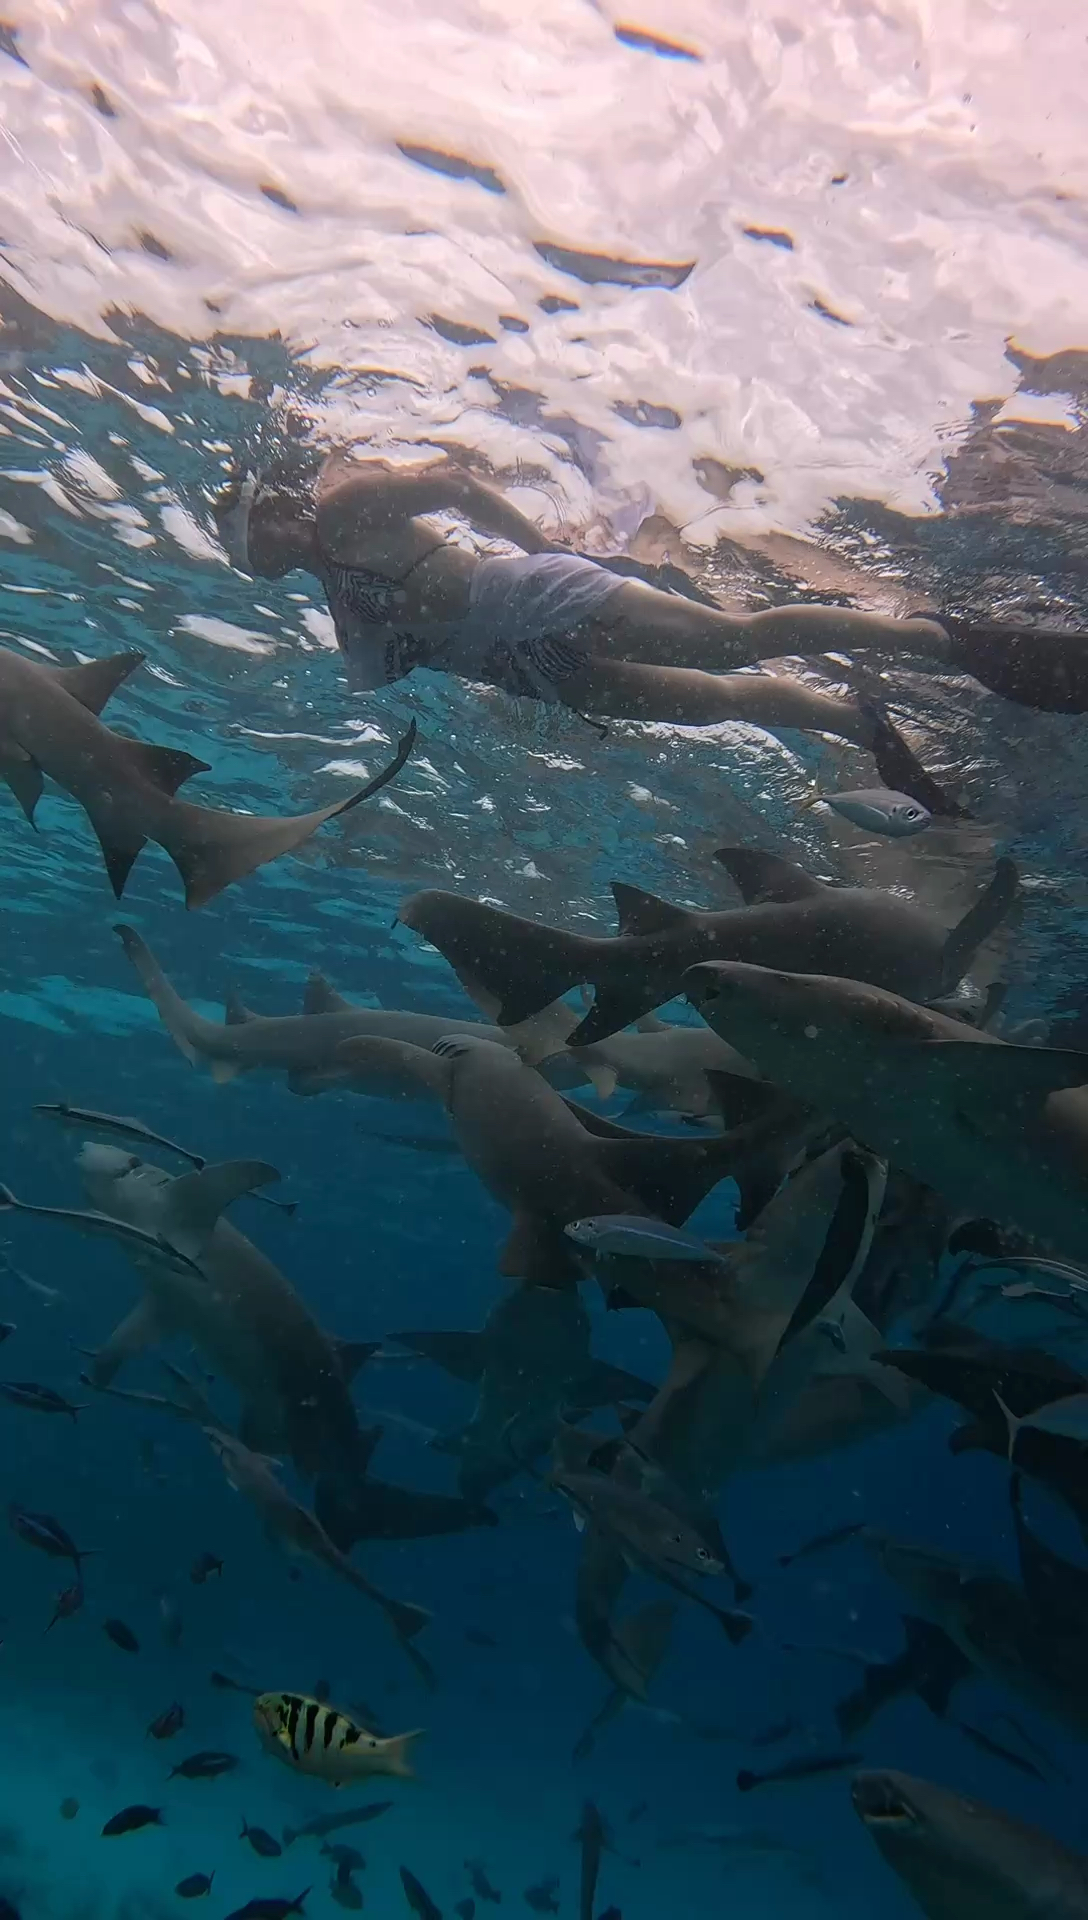 来，捅个鲨鱼窝🦈#旅行大玩家 #马尔代夫鲨鱼